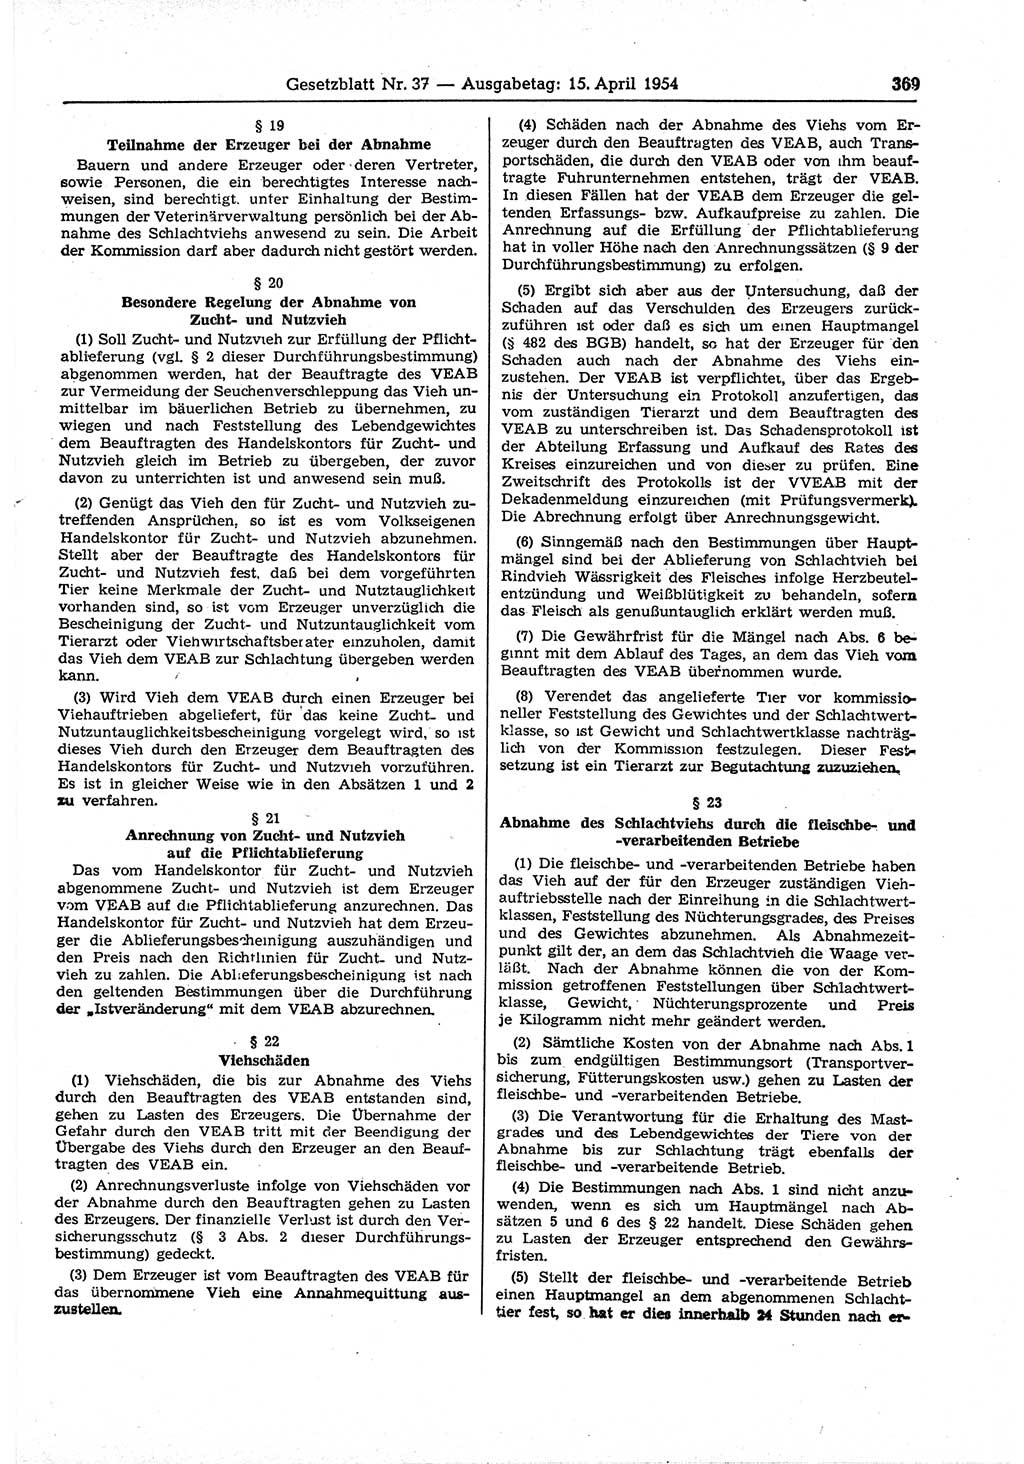 Gesetzblatt (GBl.) der Deutschen Demokratischen Republik (DDR) 1954, Seite 369 (GBl. DDR 1954, S. 369)